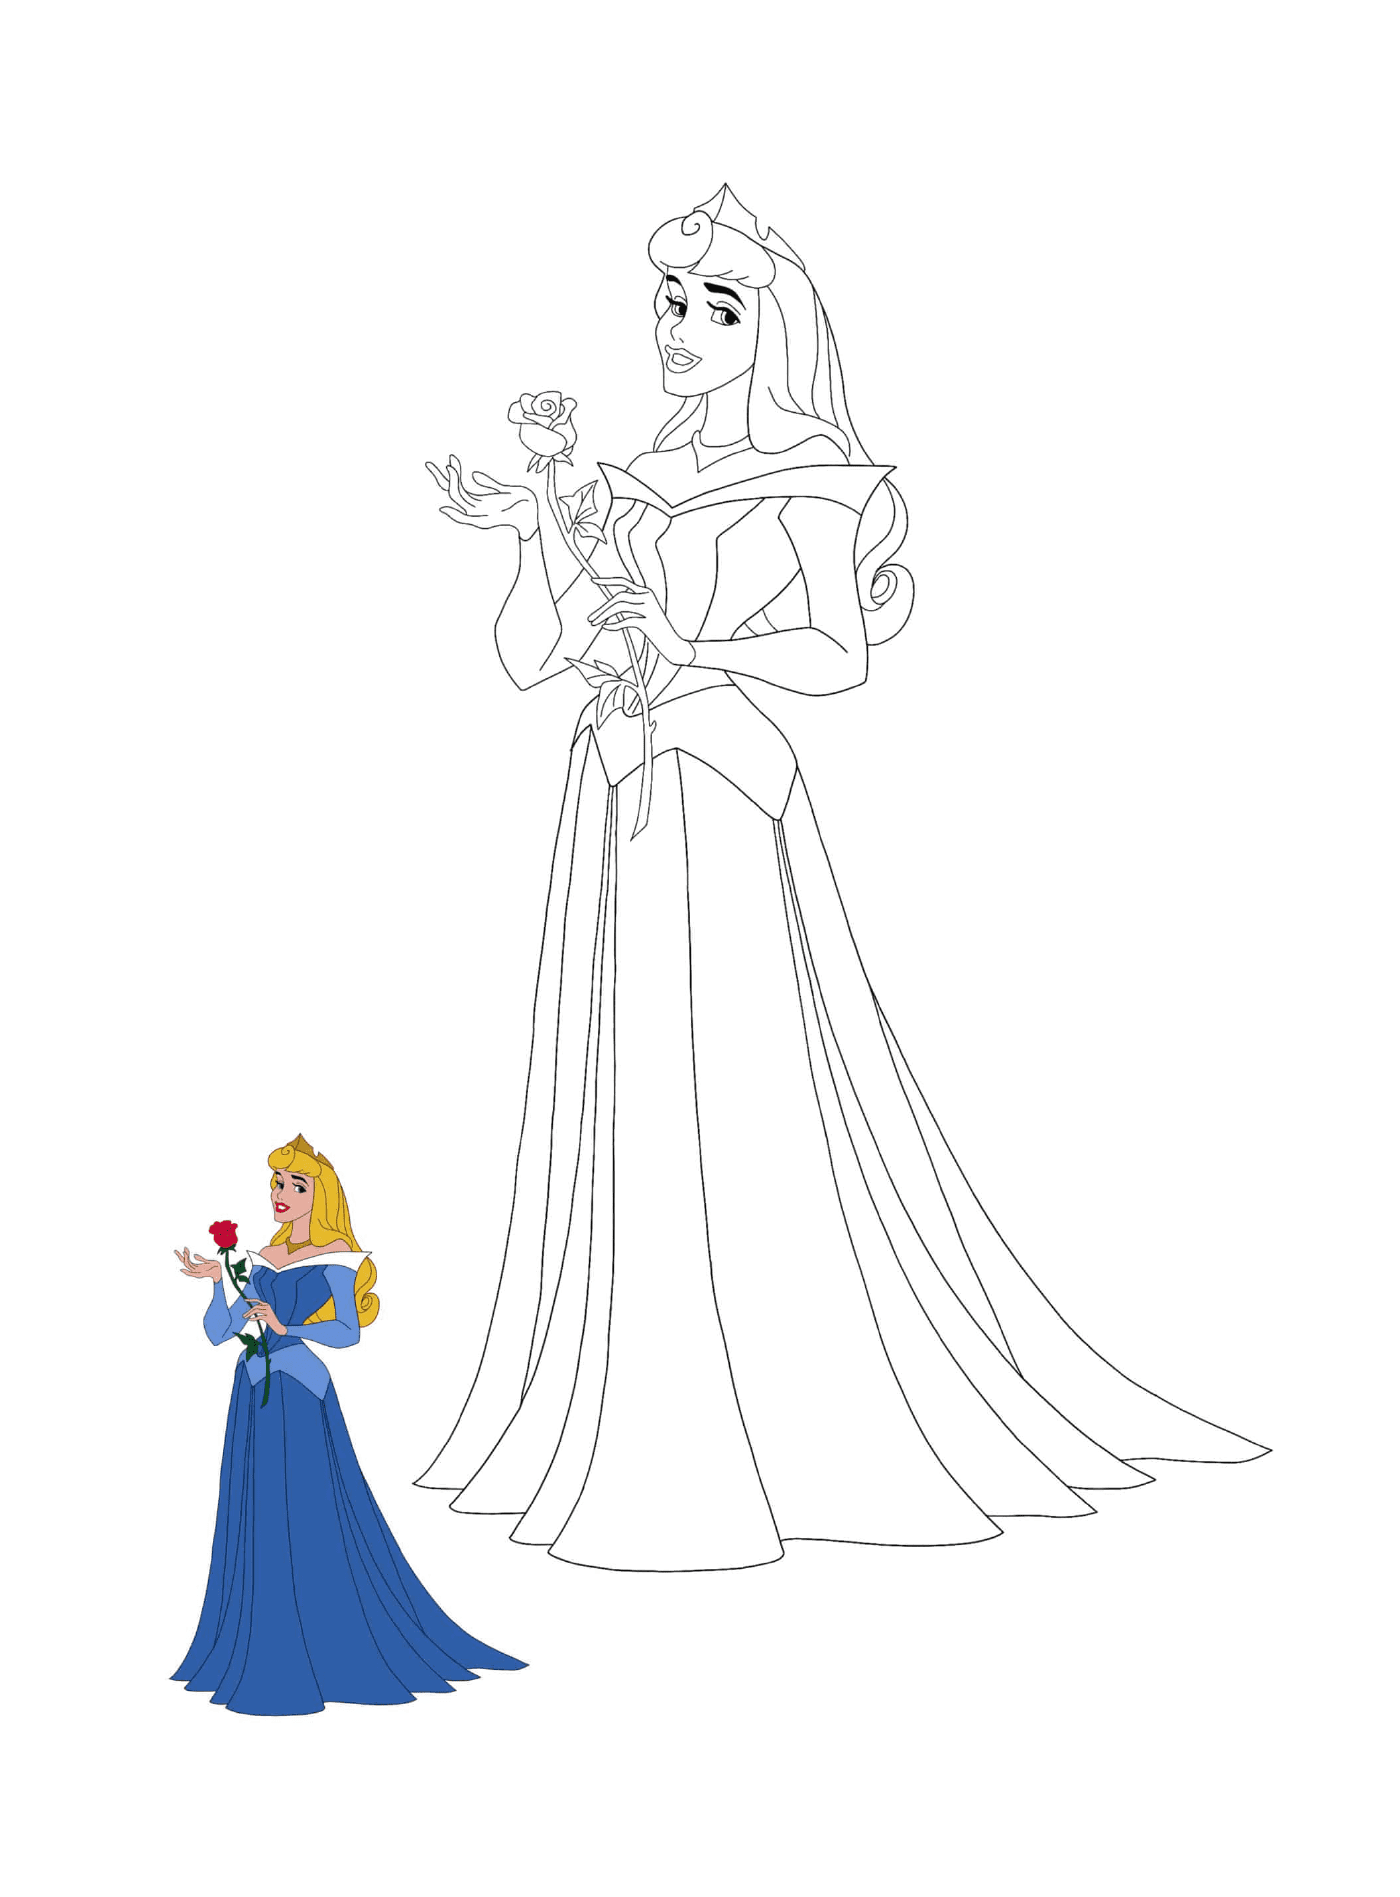  Princess of La Belle au bois dormant (Disney) with rose 